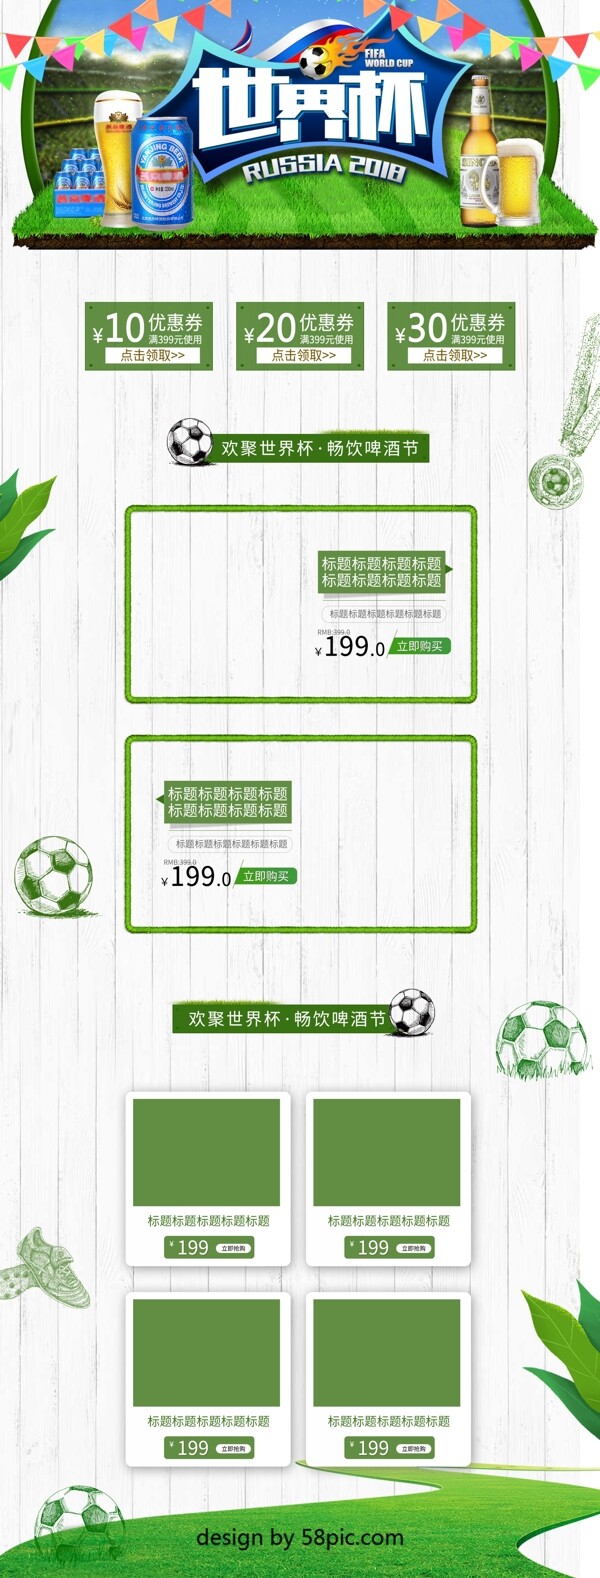 2018世界杯清新绿色首页模板